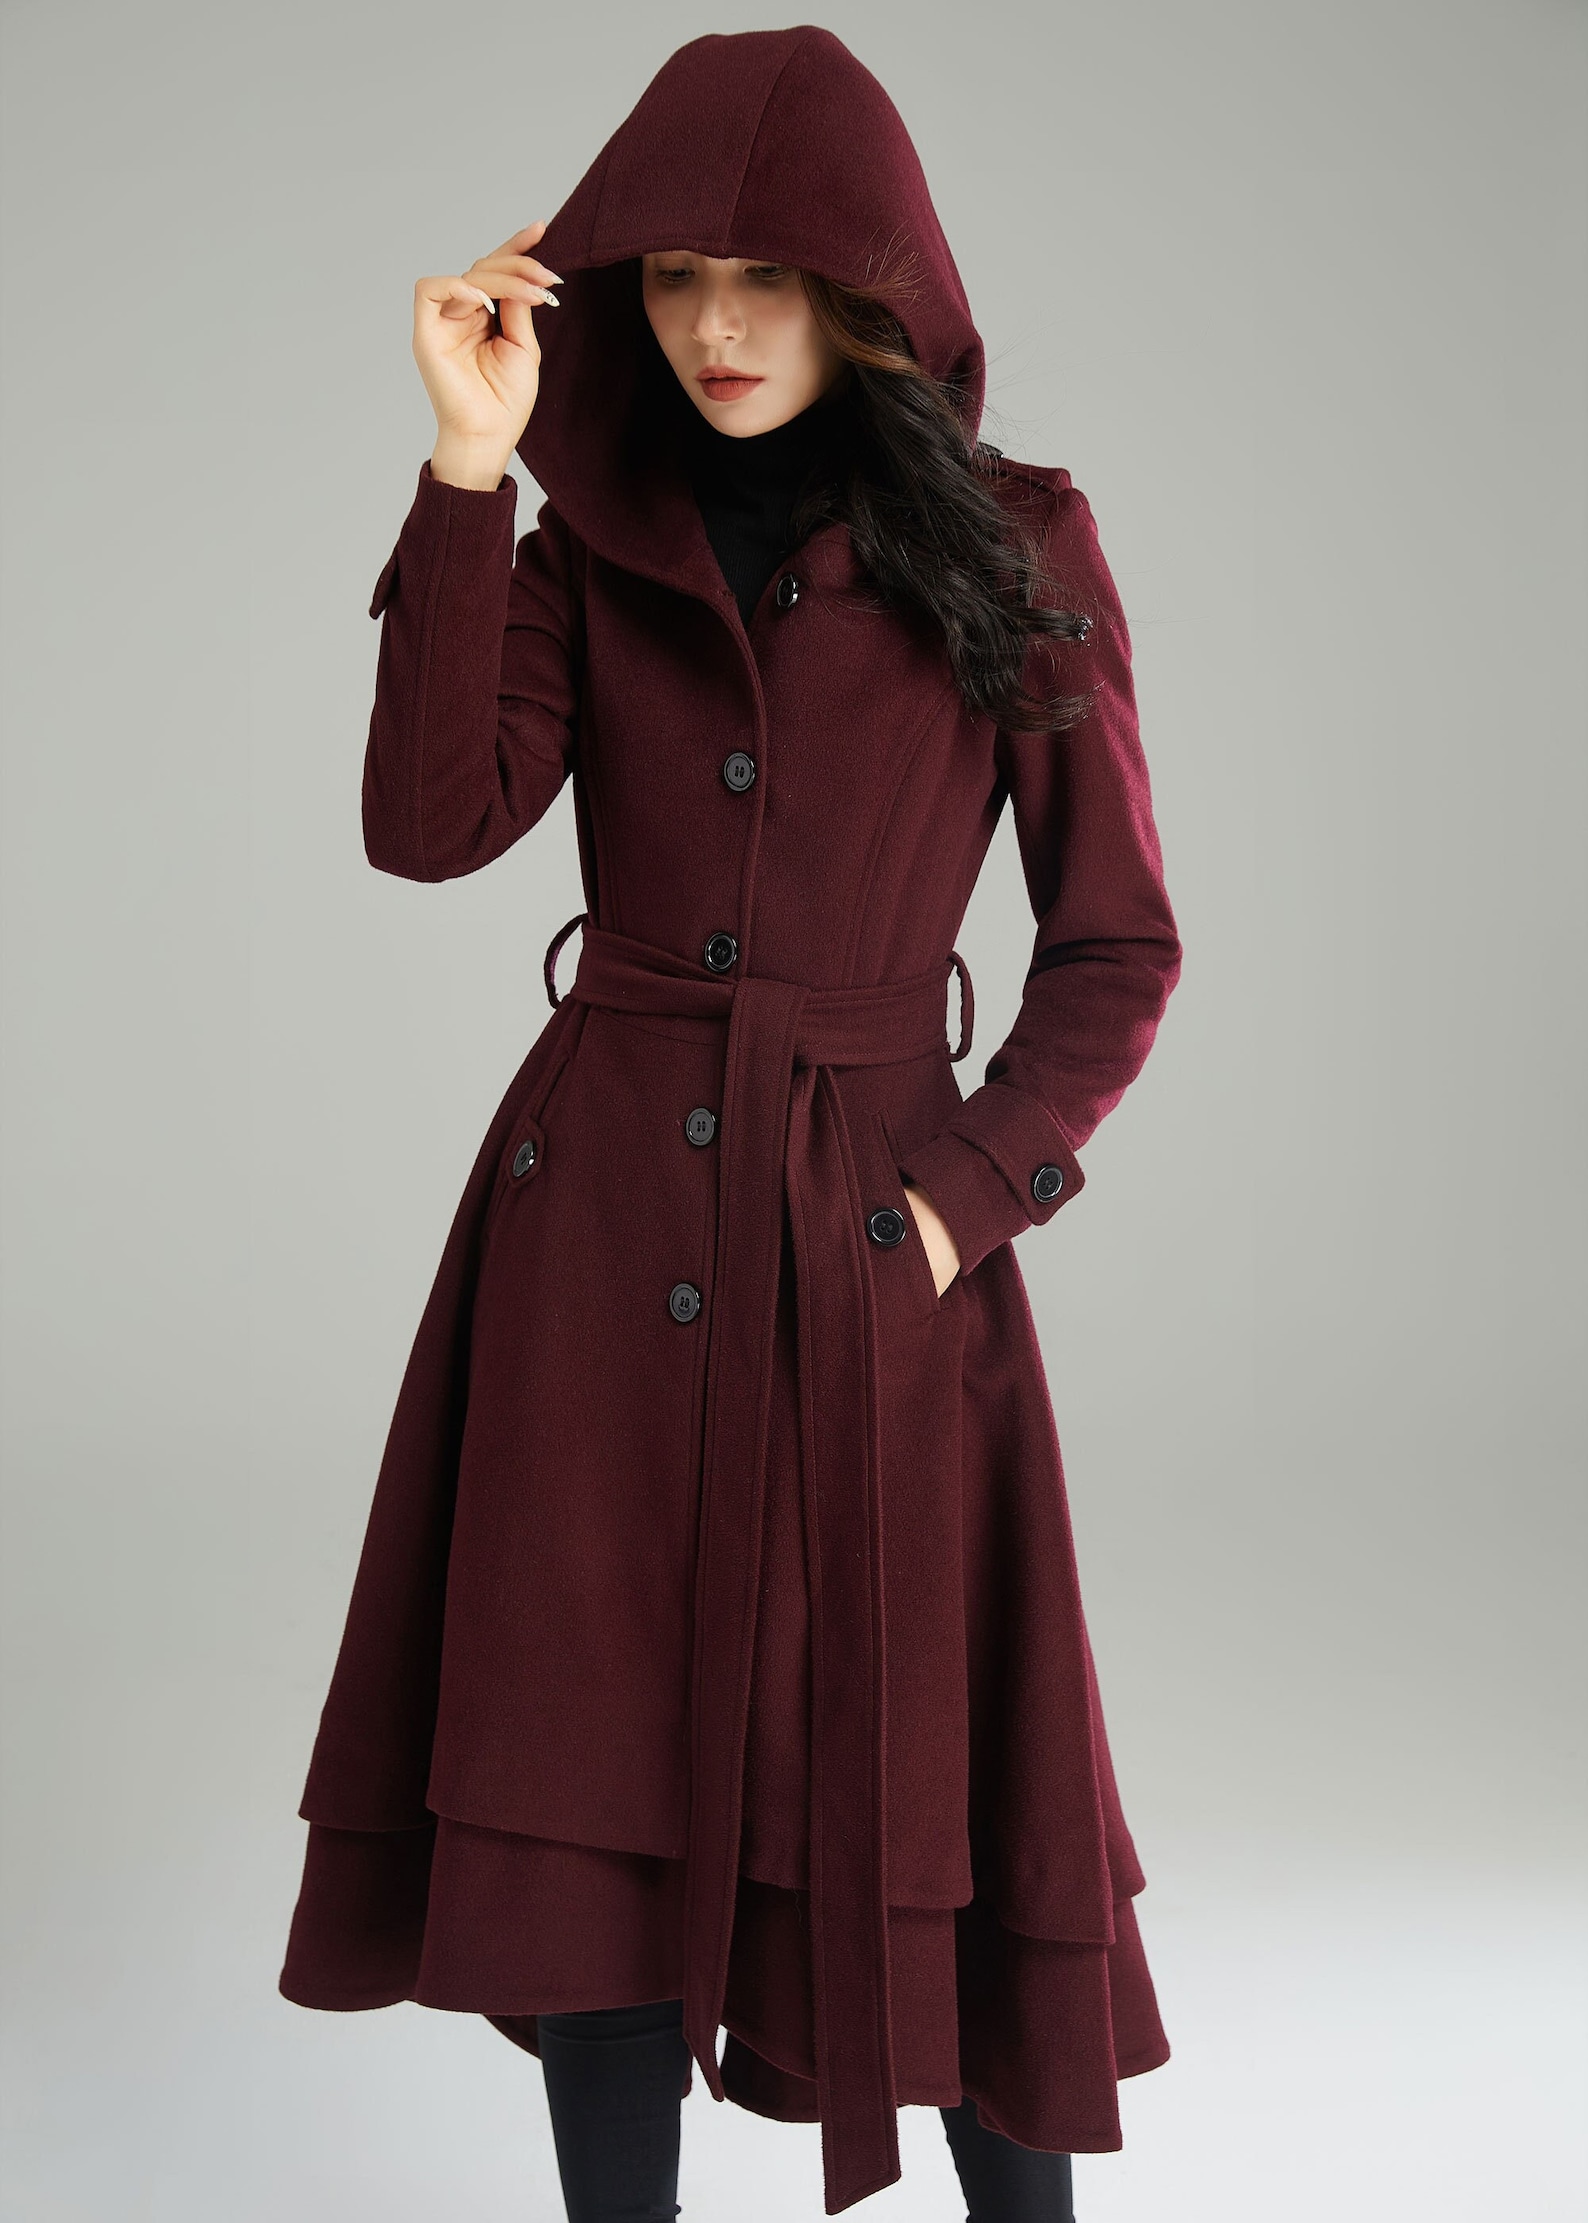 Wool Coat Wool Coat Women Hooded Wool Coat Asymmetrical - Etsy